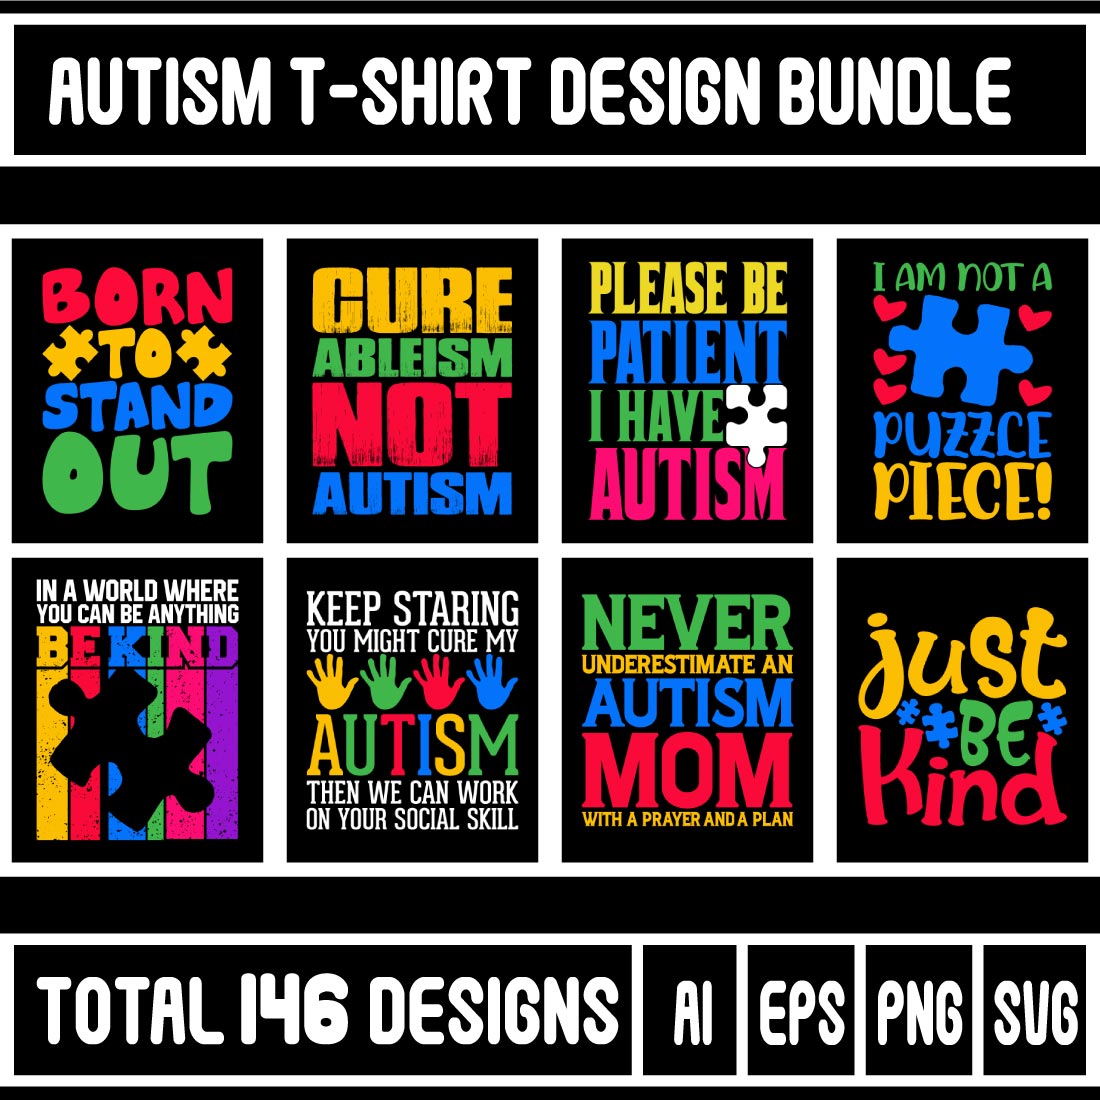 Autism T-shirt Design Bundle cover image.